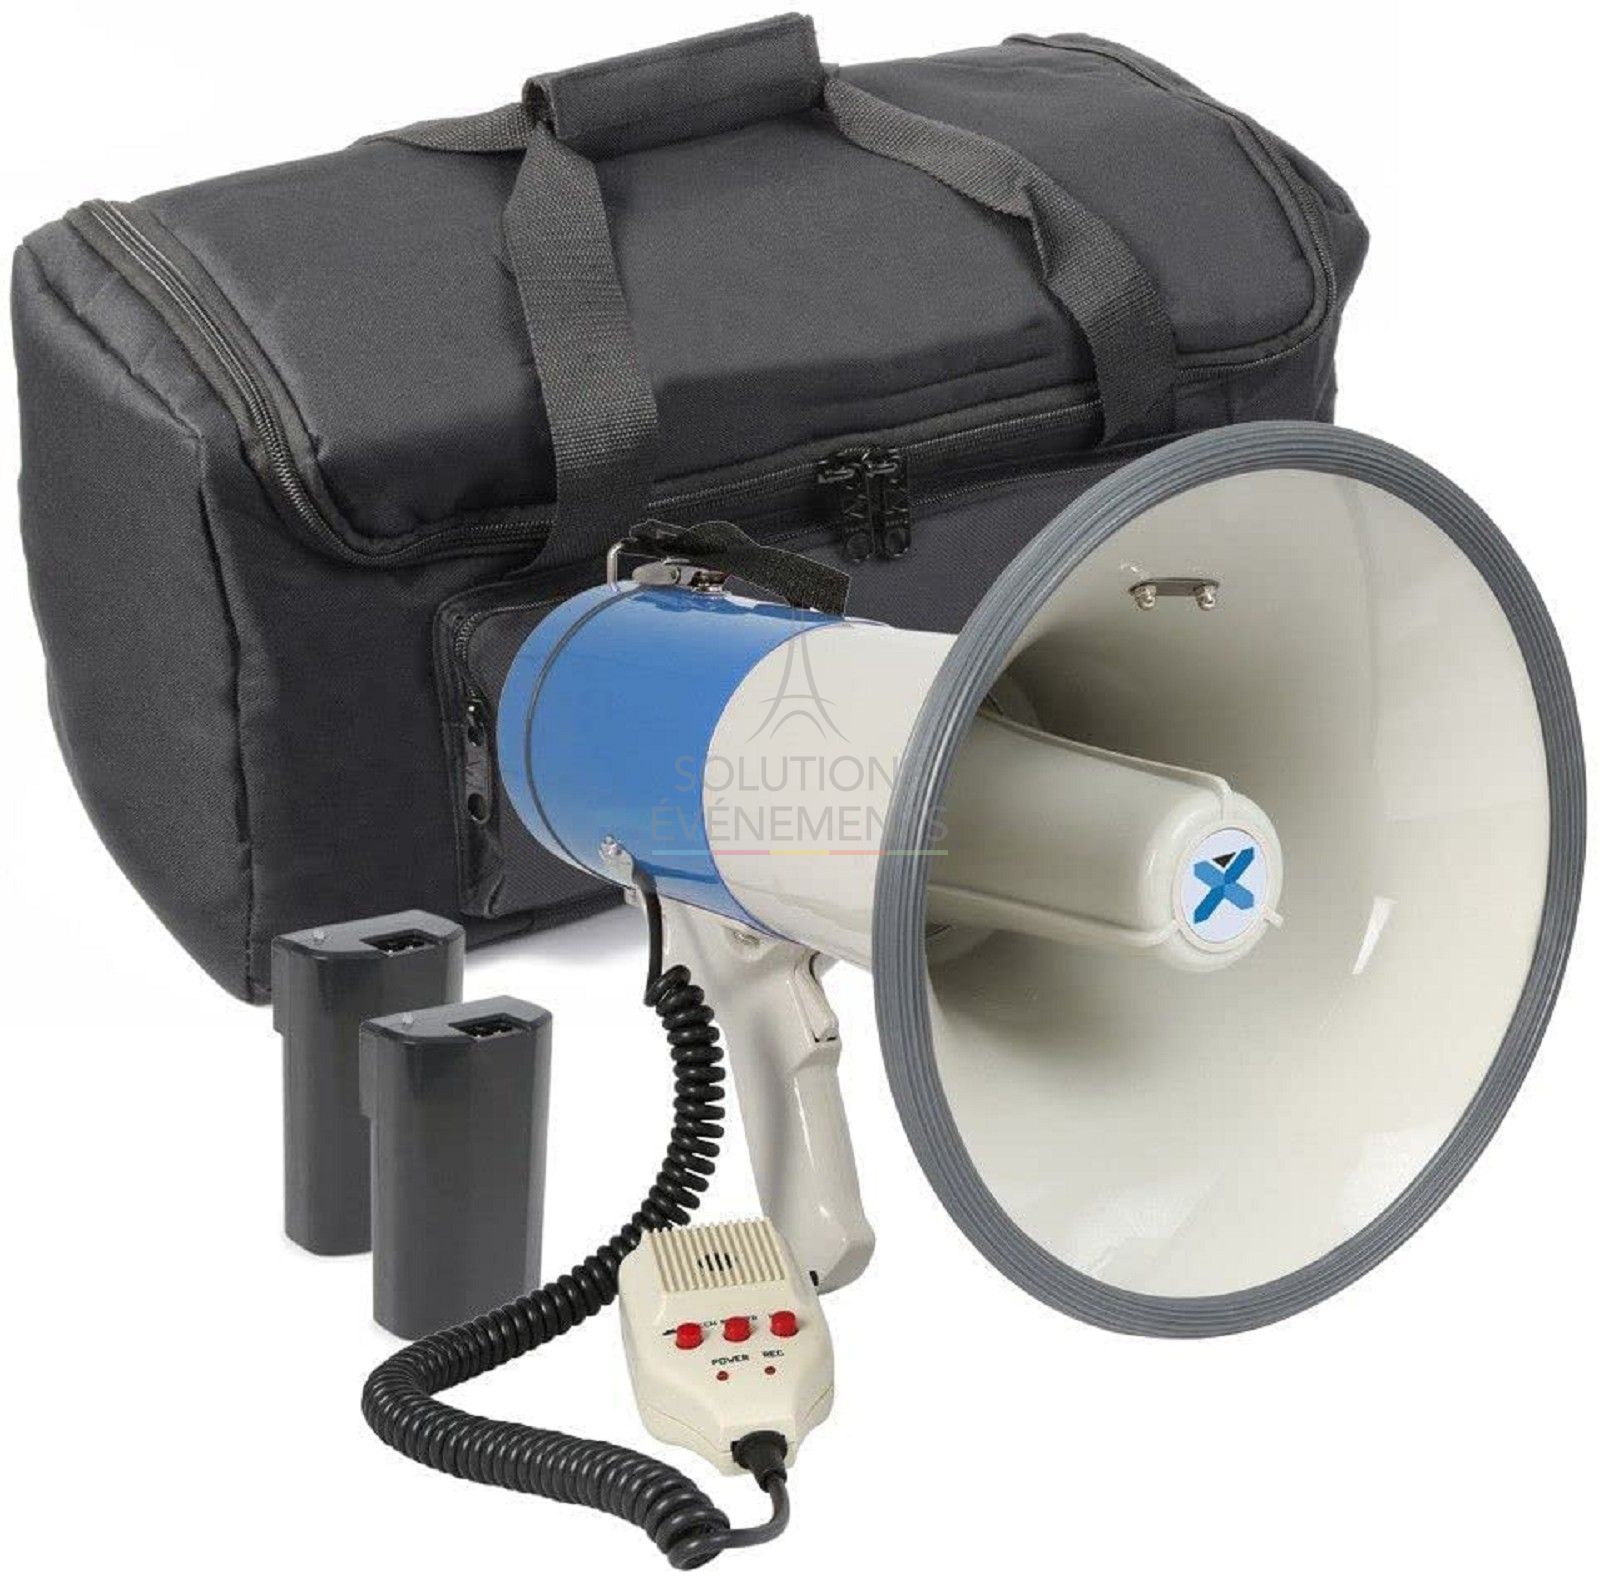 Porte-voix mégaphone pour évènements préventifs